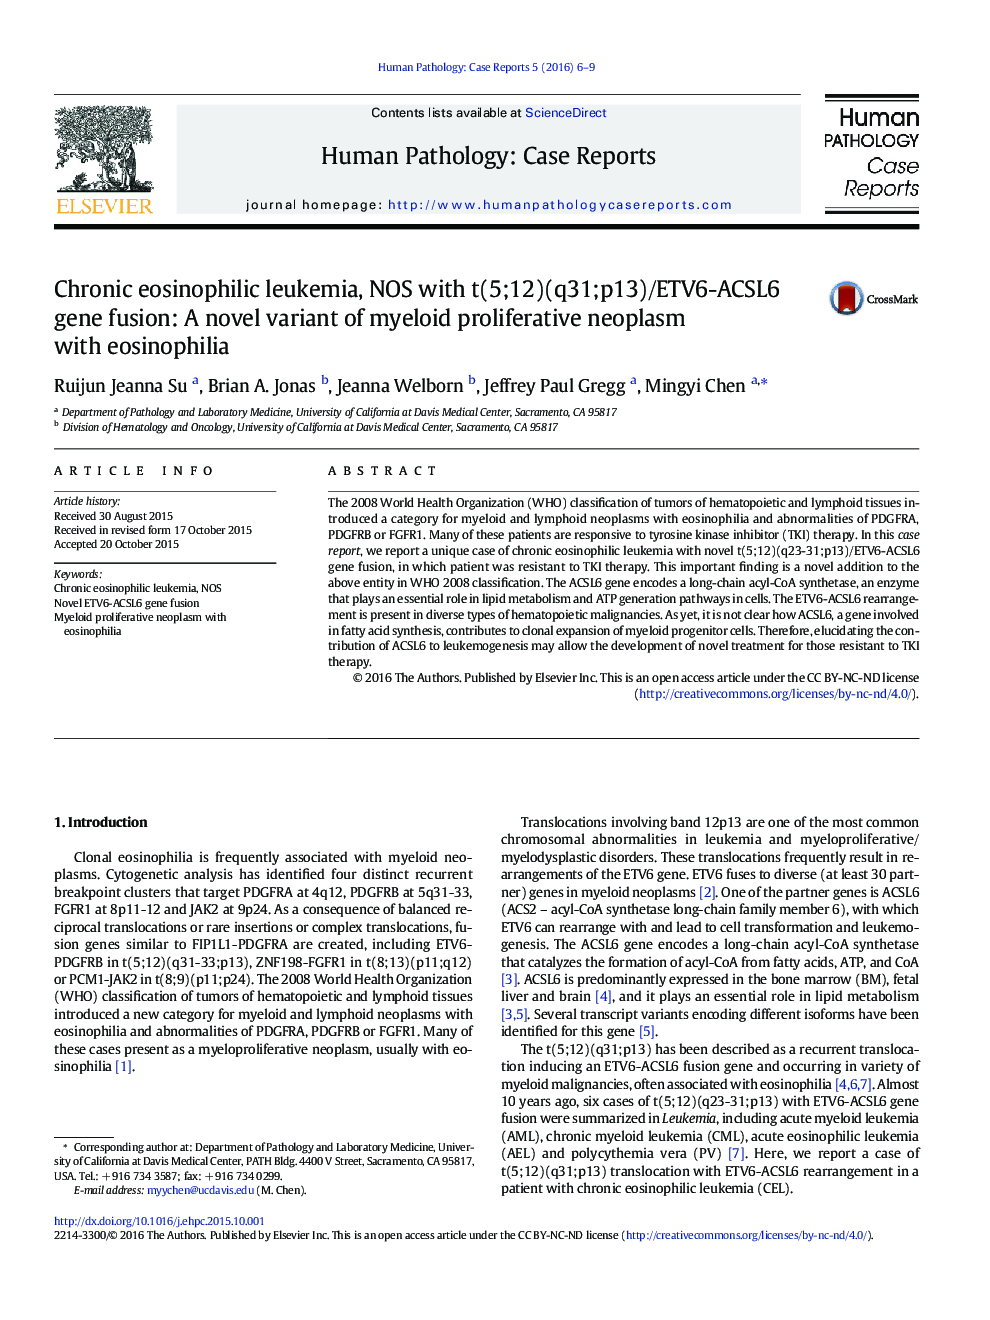 Chronic eosinophilic leukemia, NOS with t(5;12)(q31;p13)/ETV6-ACSL6 gene fusion: A novel variant of myeloid proliferative neoplasm with eosinophilia